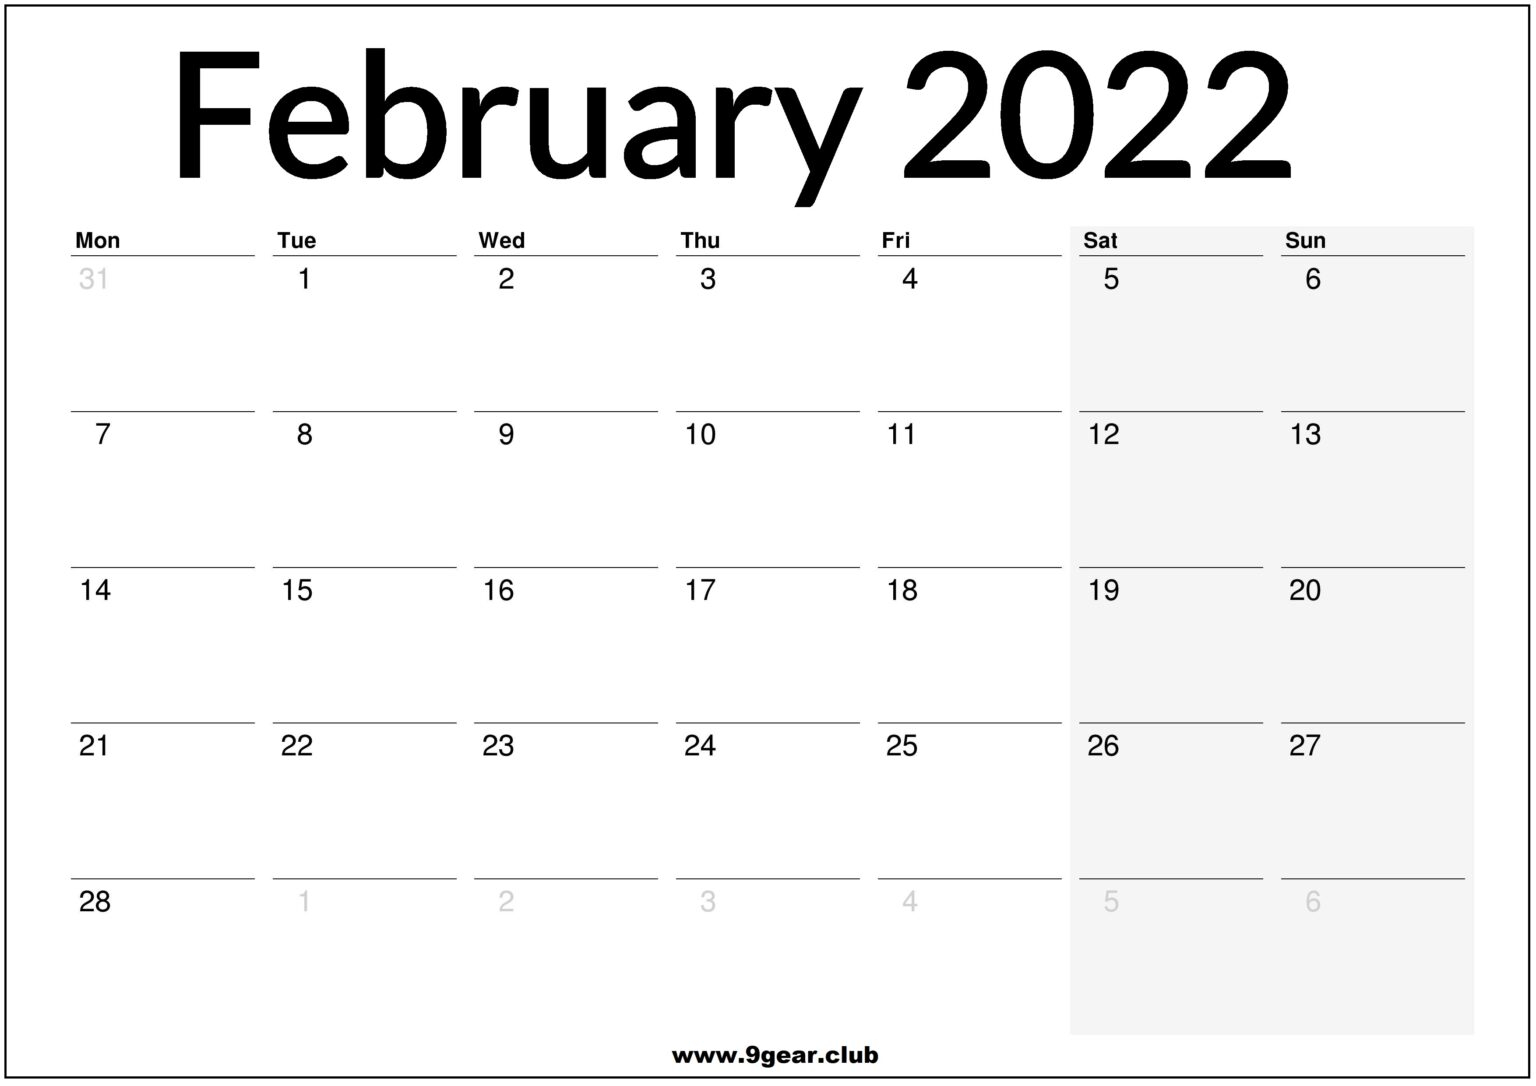 Catch February 2022 English Calendar